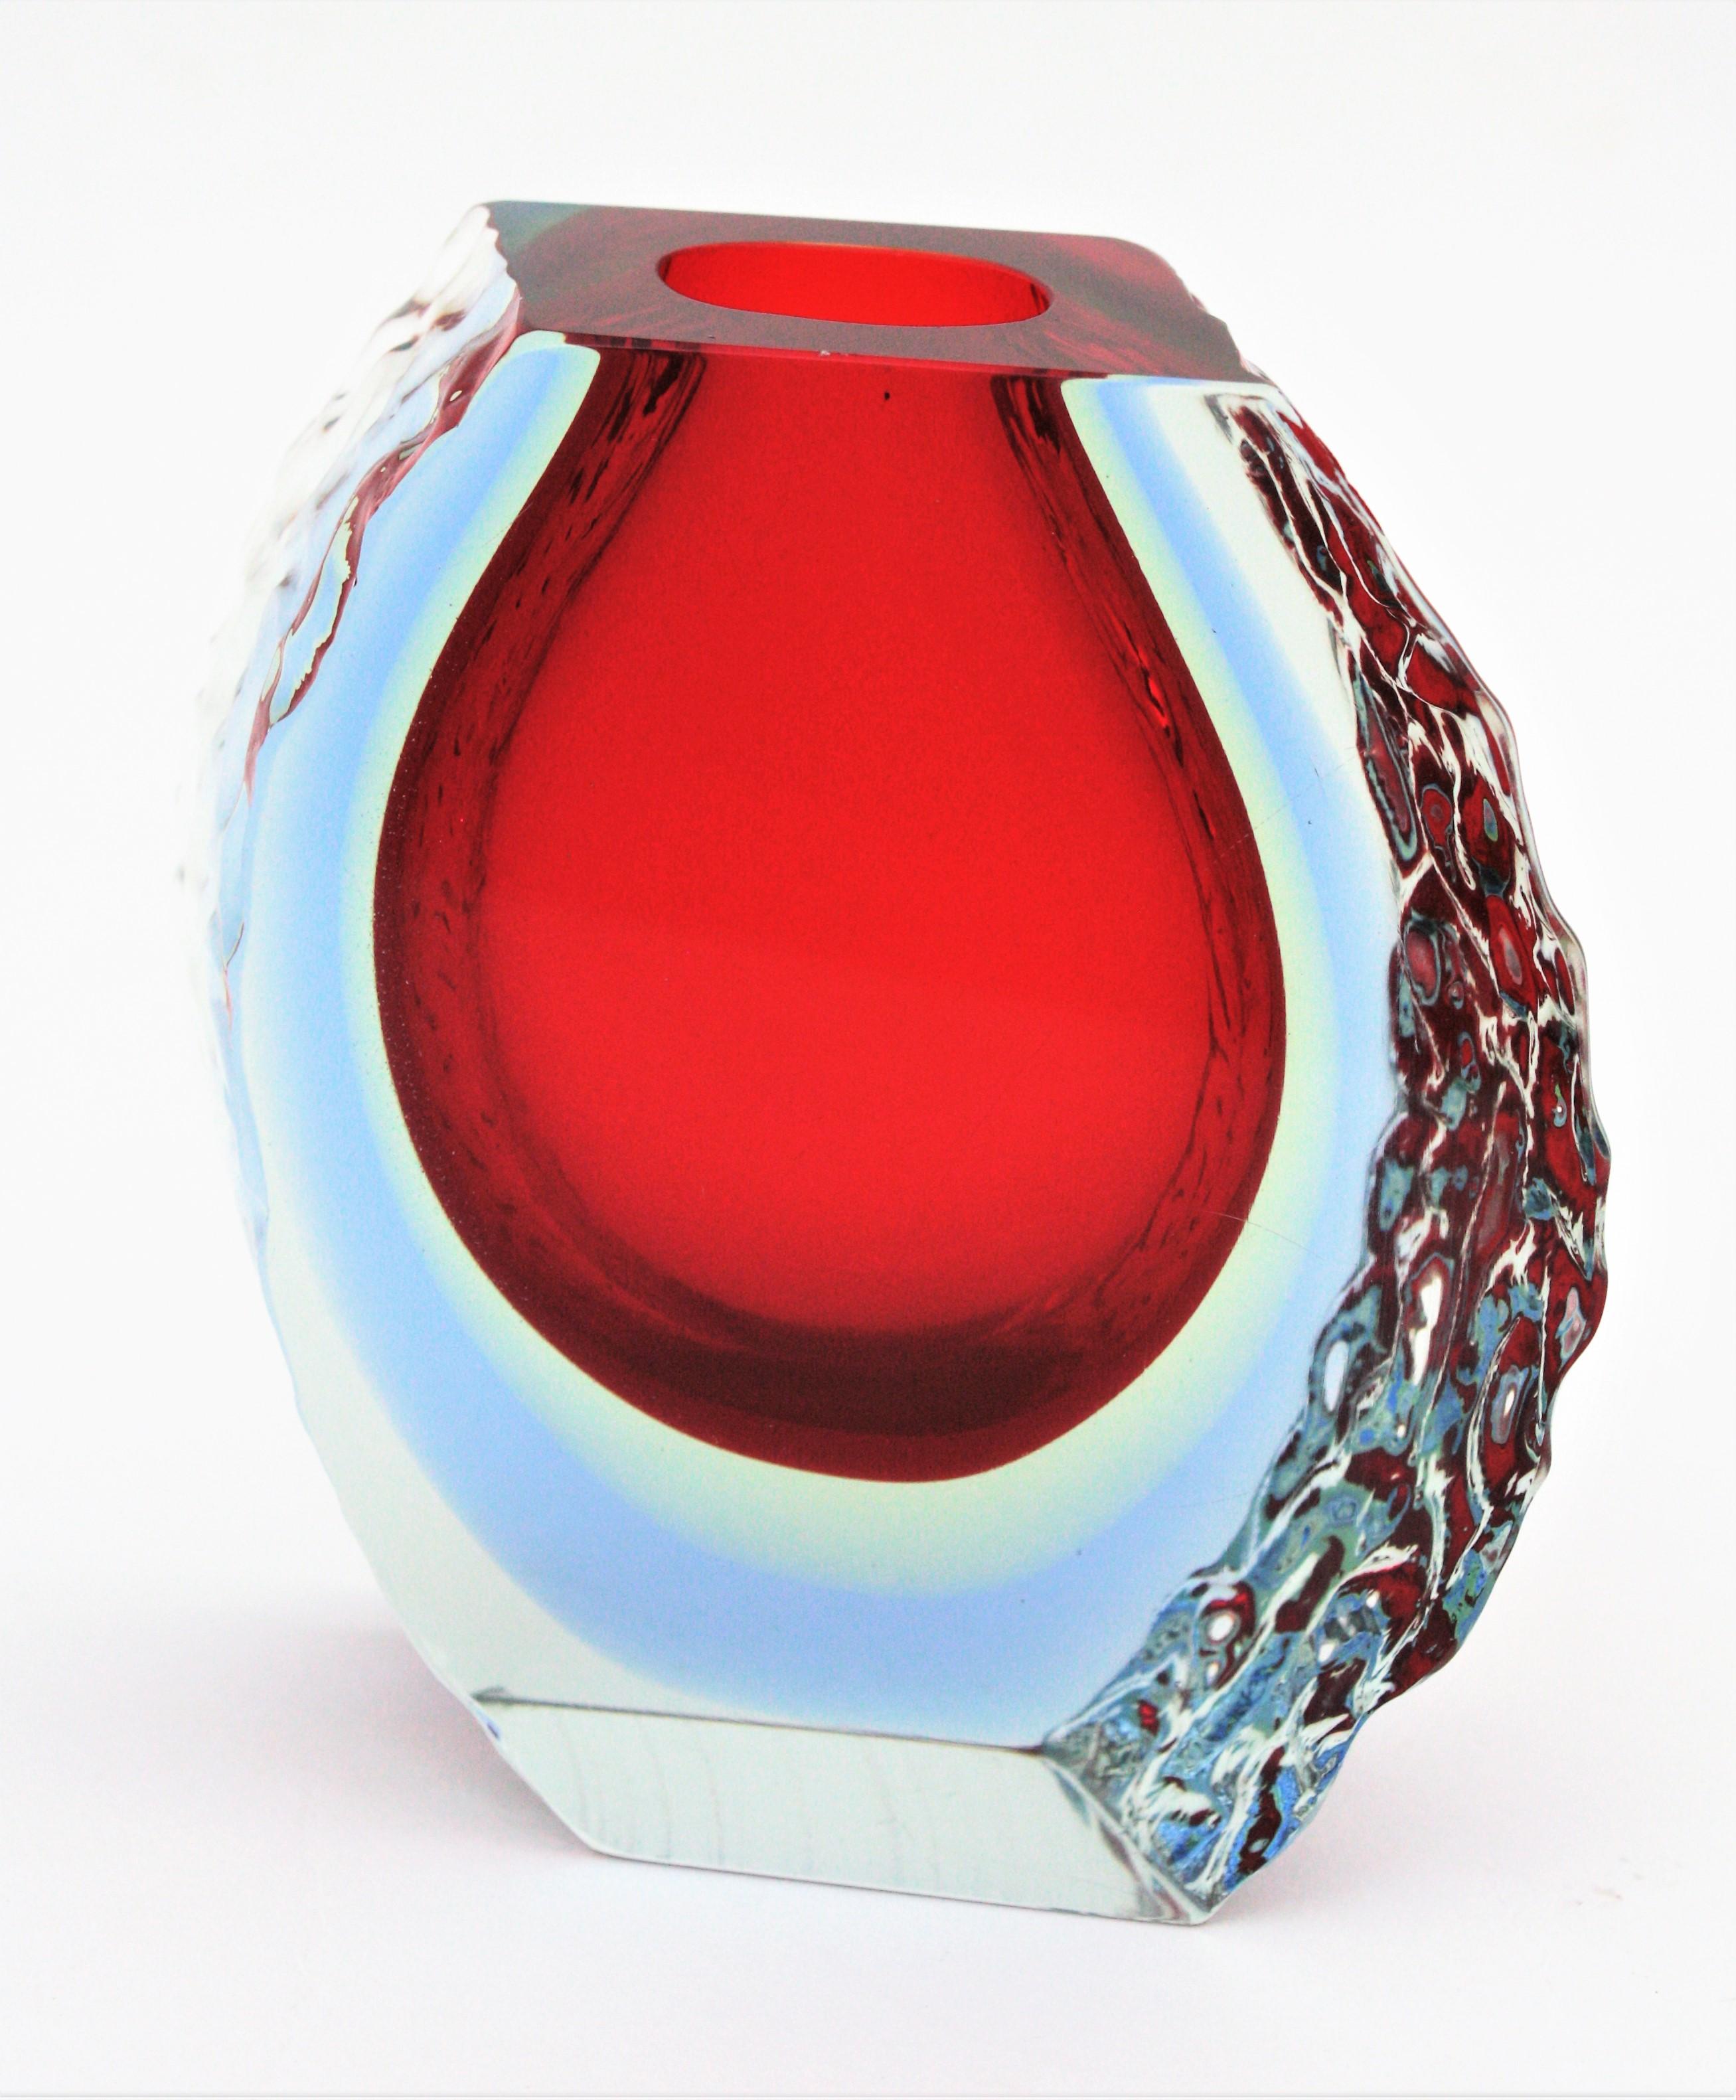 Eine farbenfrohe dreifache Sommerso-Vase aus der Jahrhundertmitte mit strukturiertem Eisglas an den Seiten. Alessandro Mandruzzato zugeschrieben, Italien, 1960er Jahre.
Diese leuchtend rote Vase kombiniert die Sommerso-Technik (rotes, hellgelbes